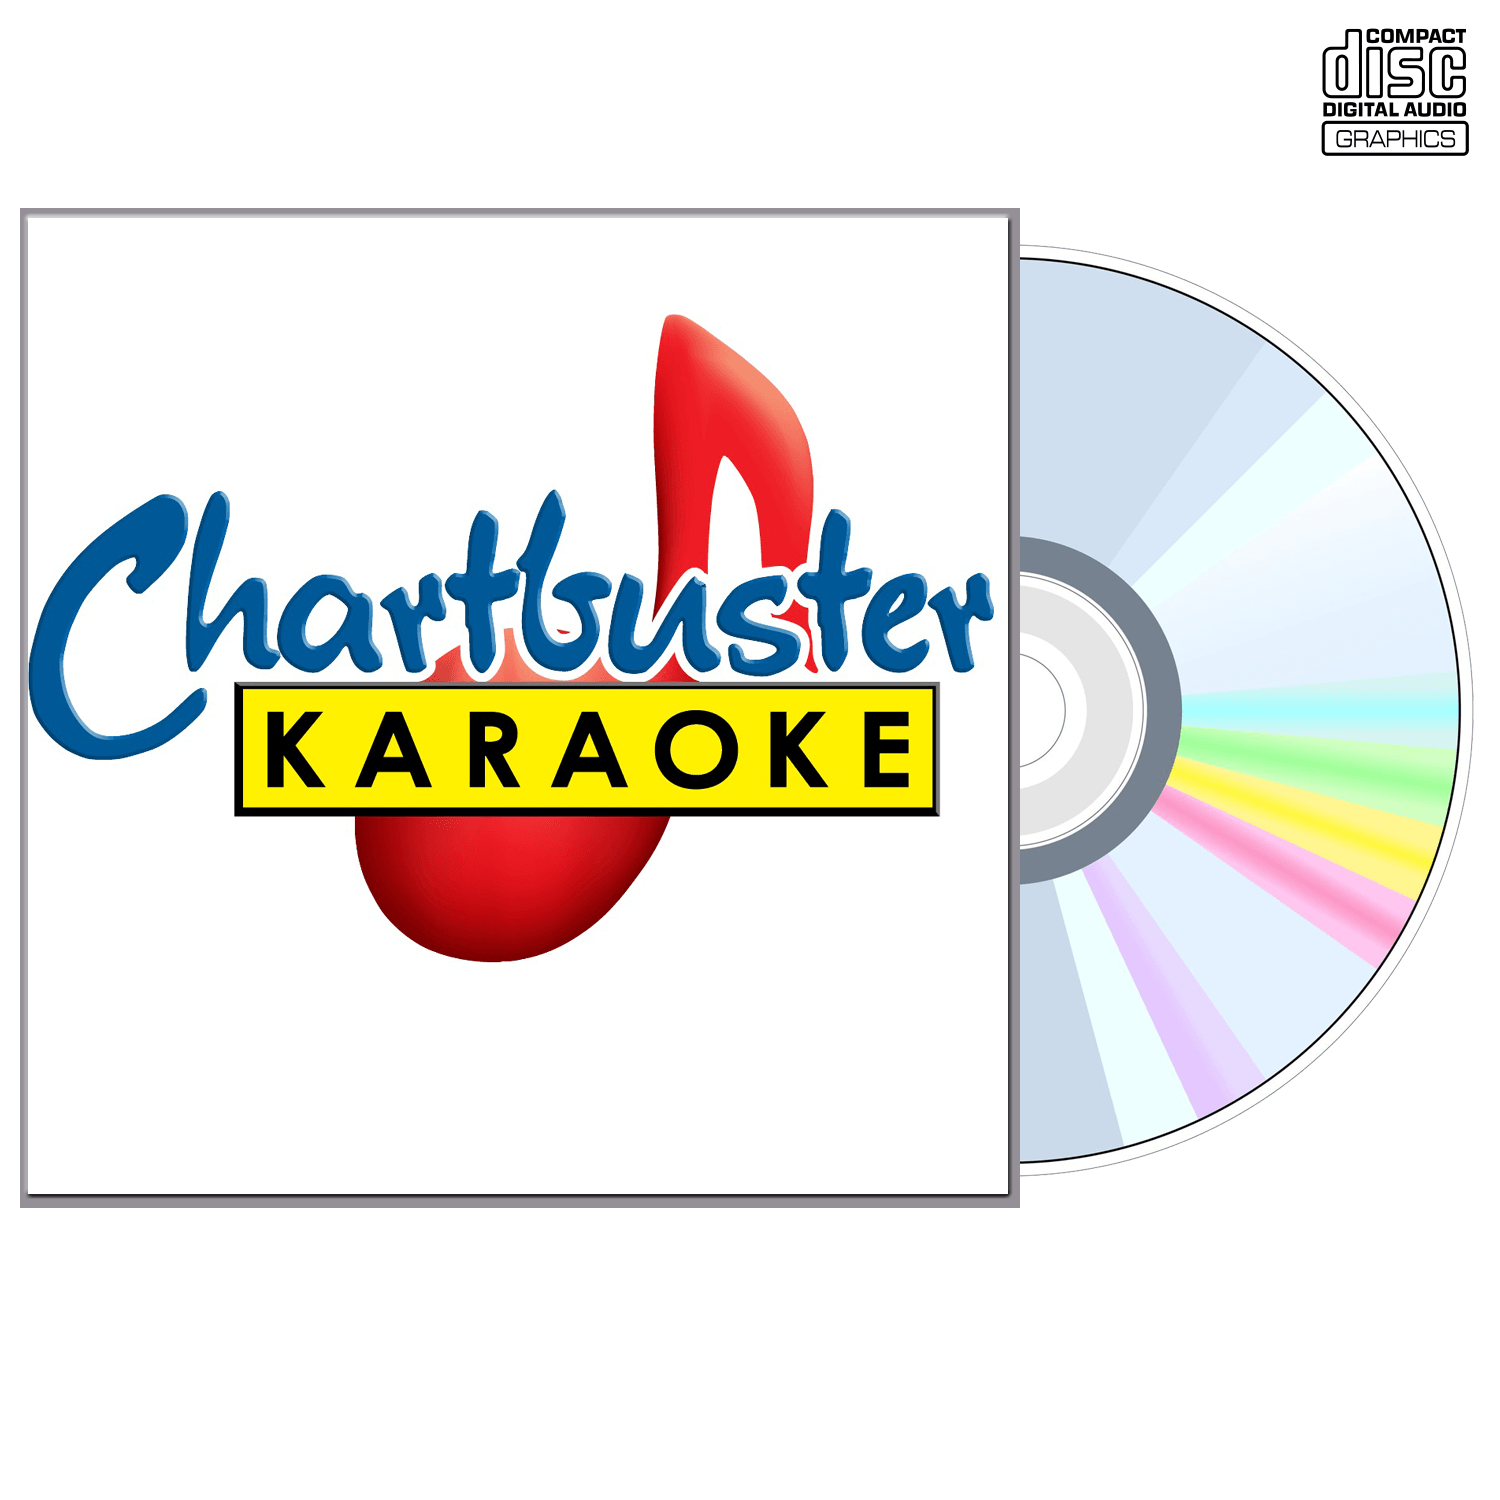 Sugarland - CD+G - Chartbuster Karaoke - Karaoke Home Entertainment